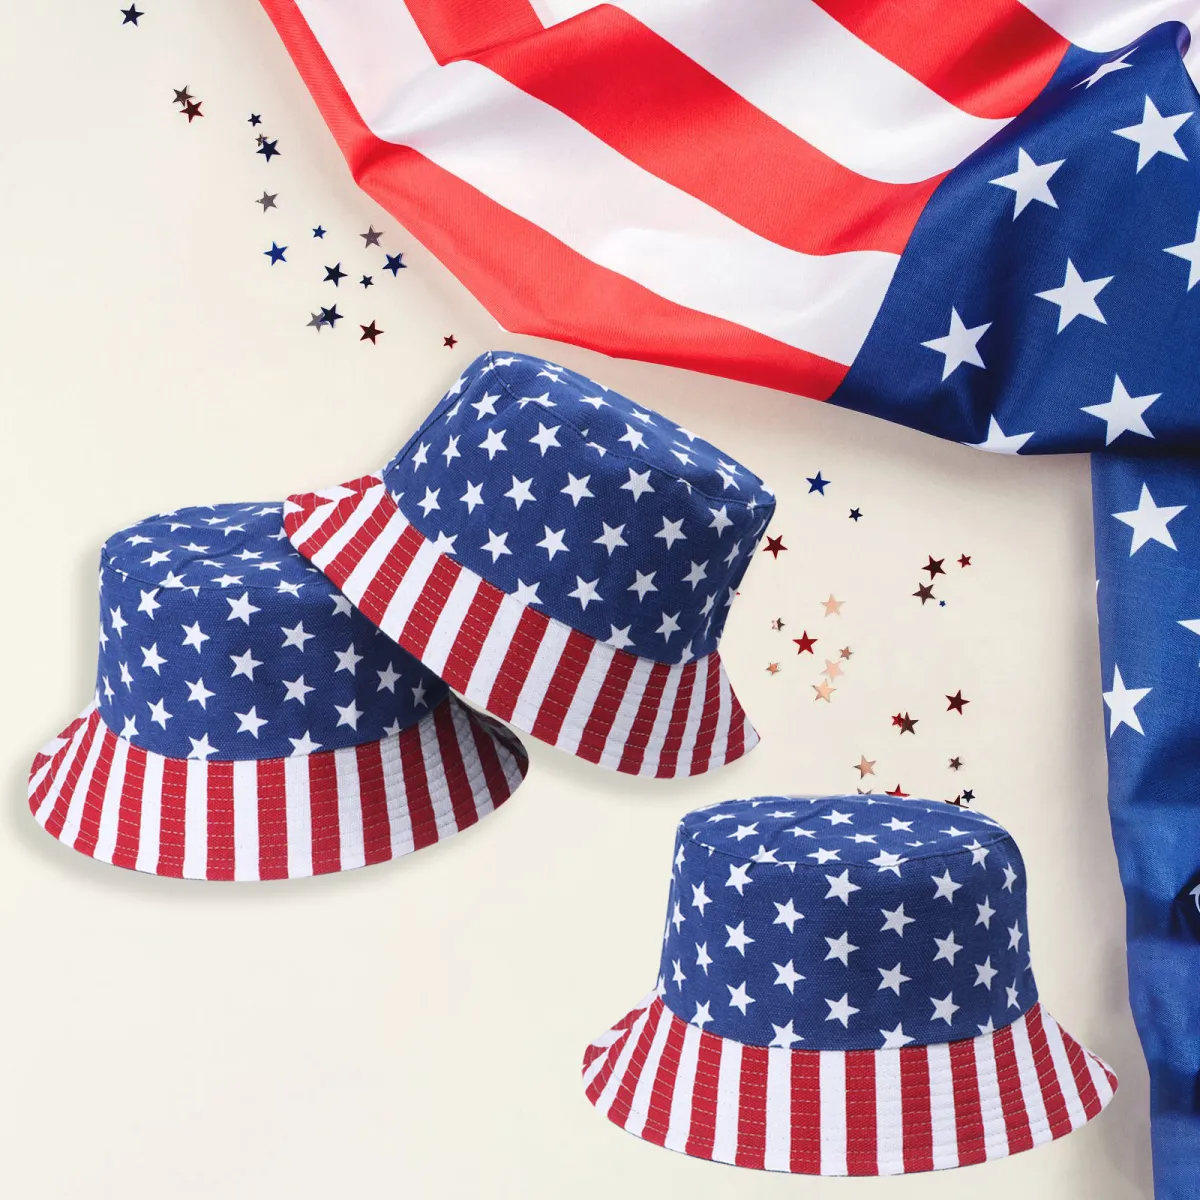 Mũ Cờ Mỹ: Mũ Cờ Mỹ là biểu tượng không thể thiếu để thể hiện lòng yêu nước và tình cảm đối với Mỹ. Với những thiết kế mới, Mũ Cờ Mỹ đã trở nên thời trang hơn và phù hợp với nhiều đối tượng khác nhau. Hãy cùng chiêm ngưỡng hình ảnh Mũ Cờ Mỹ để cảm nhận sự tự hào và lòng yêu nước của bản thân.